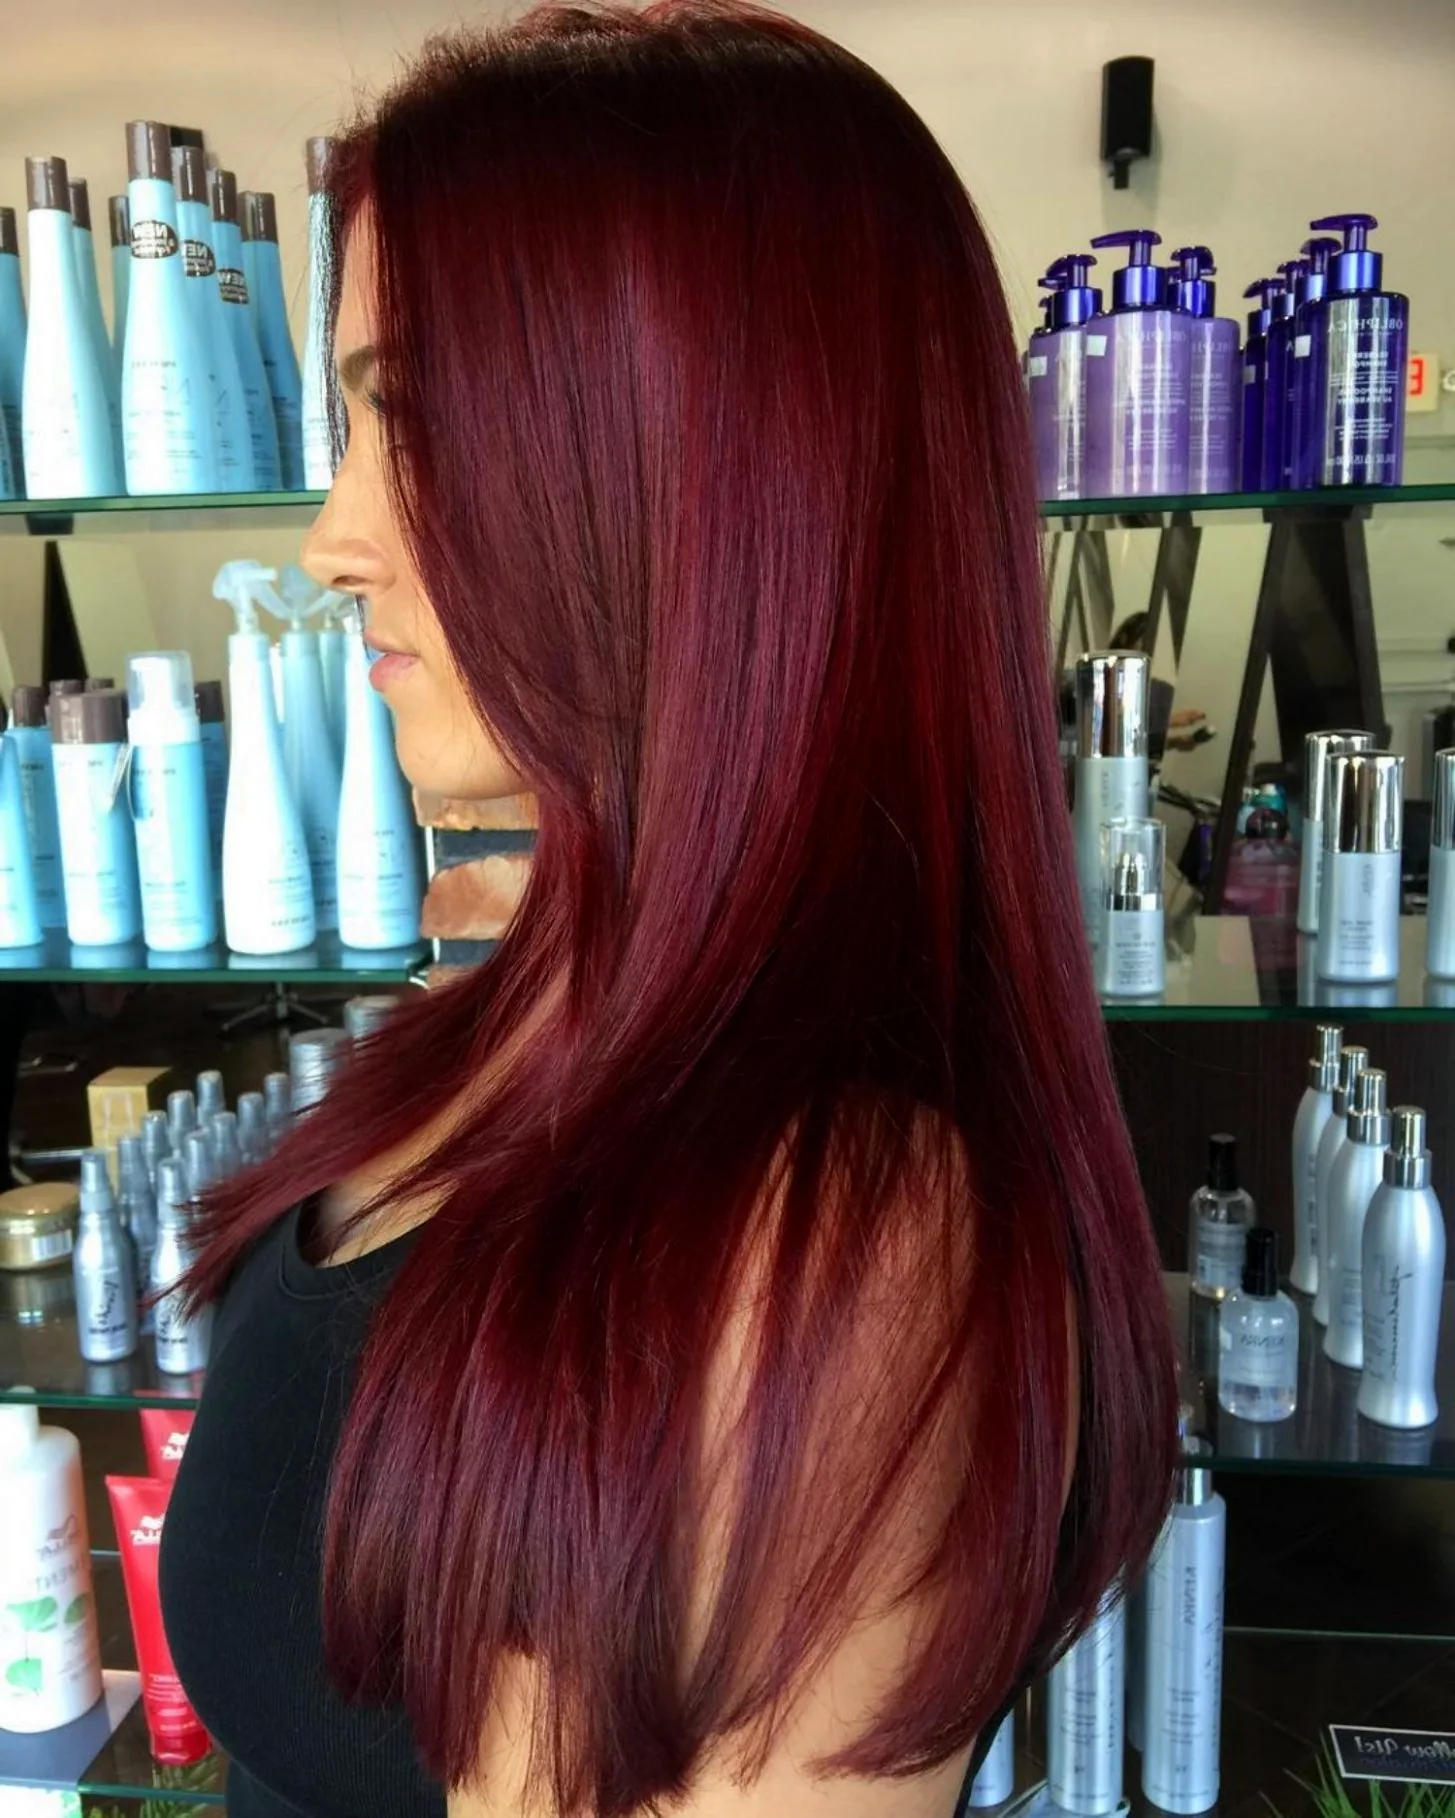 Краска для волос FARA NEW 510 Красное дерево